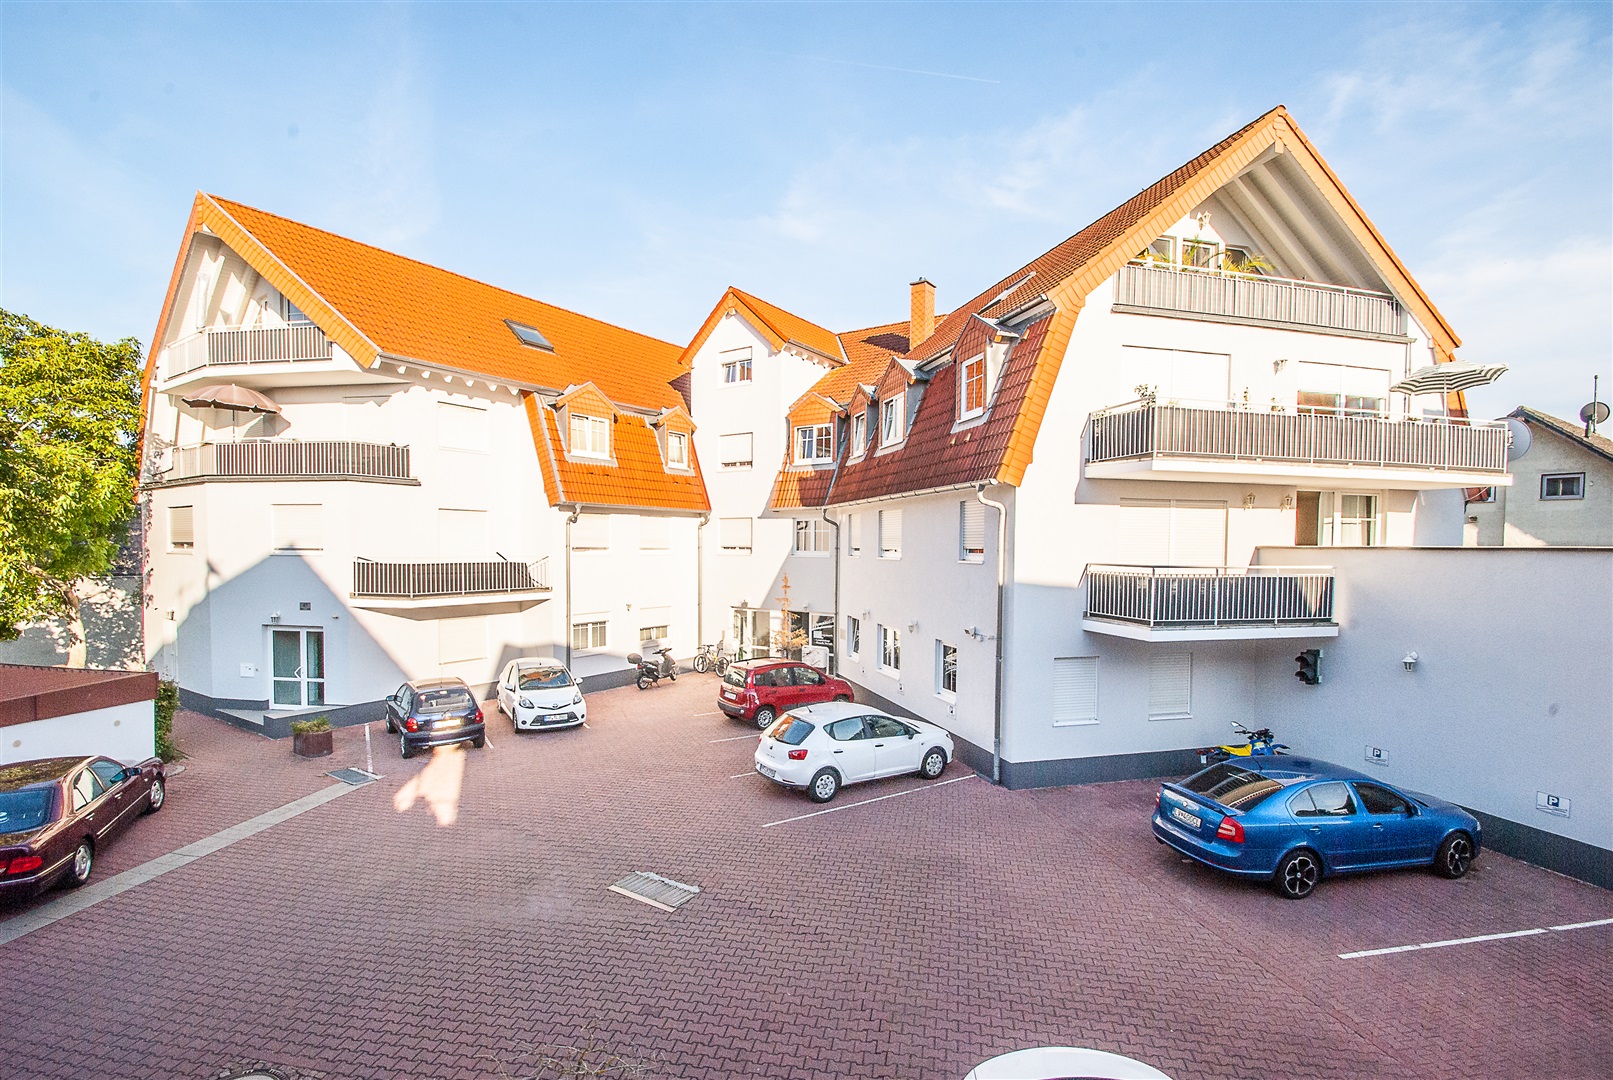 Brilliant erstelltes Mehrfamilienhaus, hochwertige Wohnungen mit super schönen und großen Balkonen und einer top Tiefgarage - Oliver Reifferscheid - Immobilienmakler Darmstadt